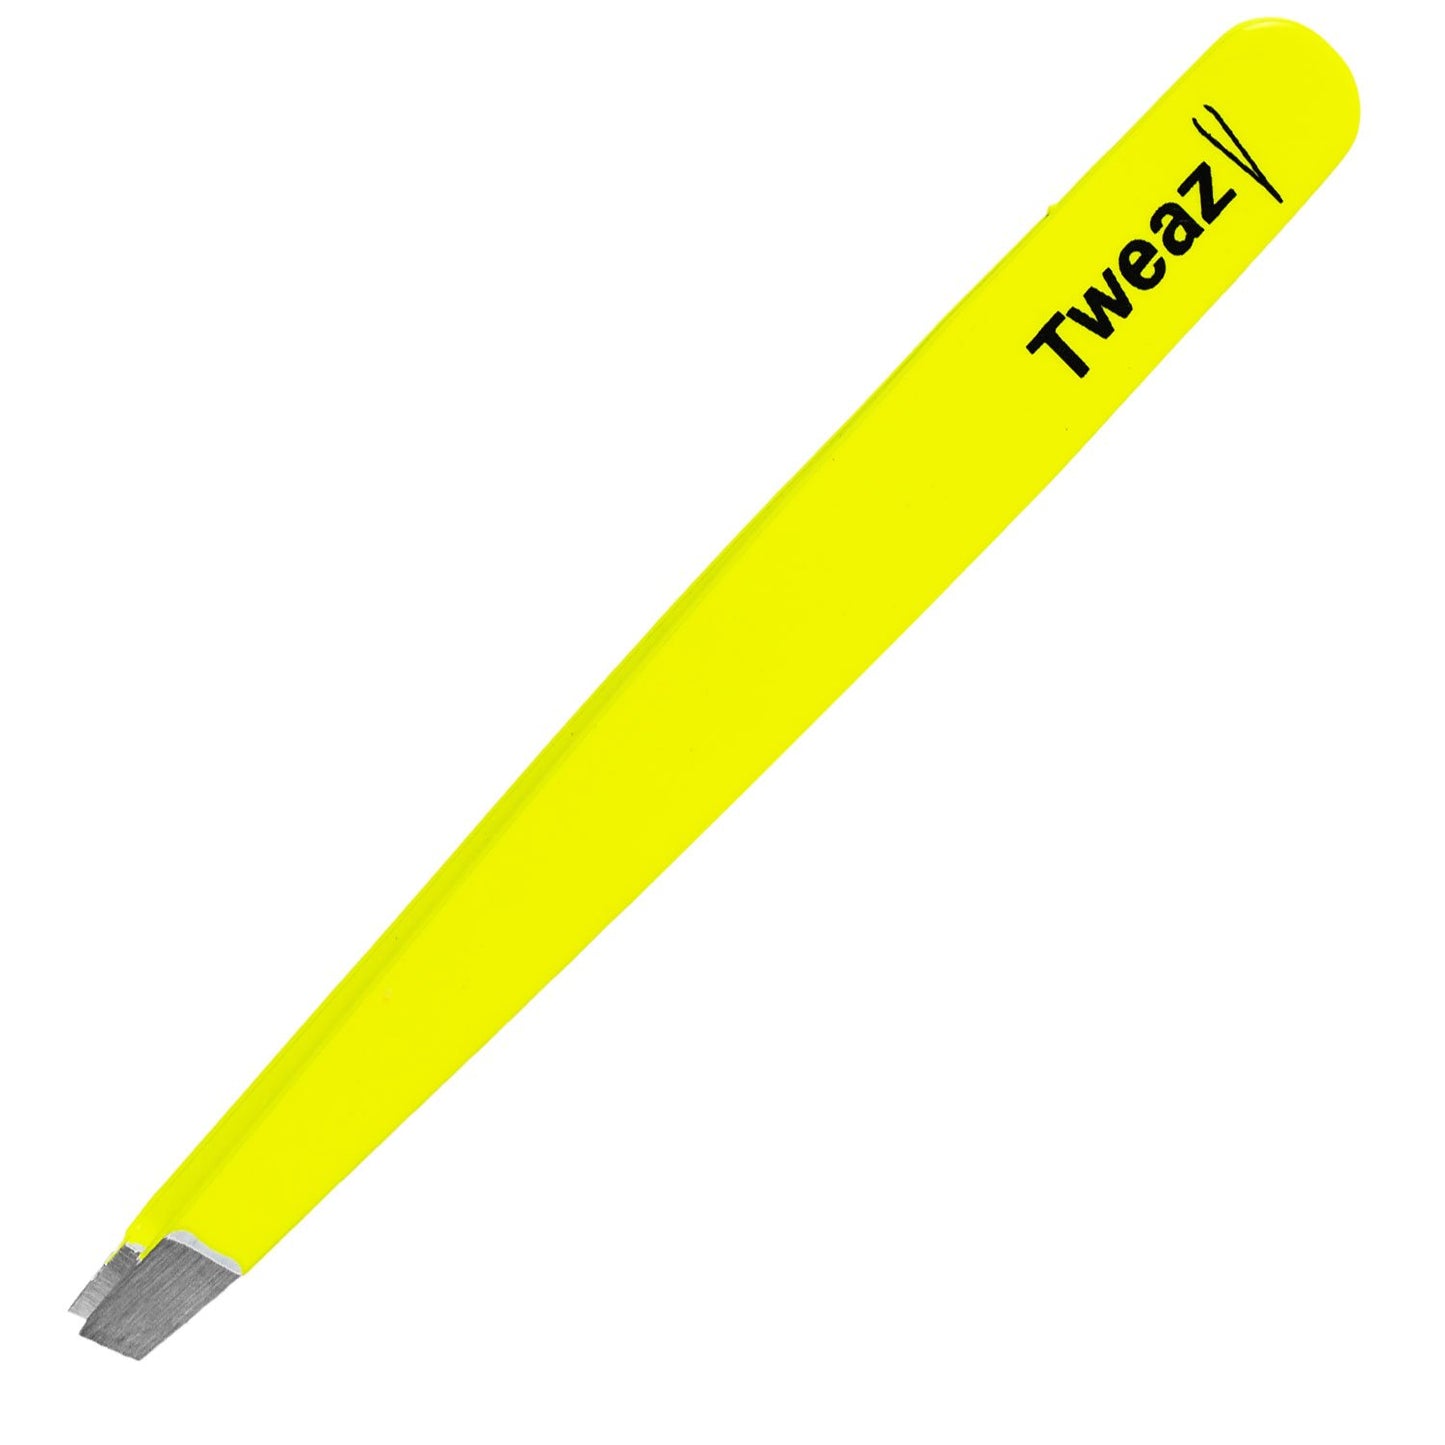 K-Pro TWEAZY Tweezers - Yellow